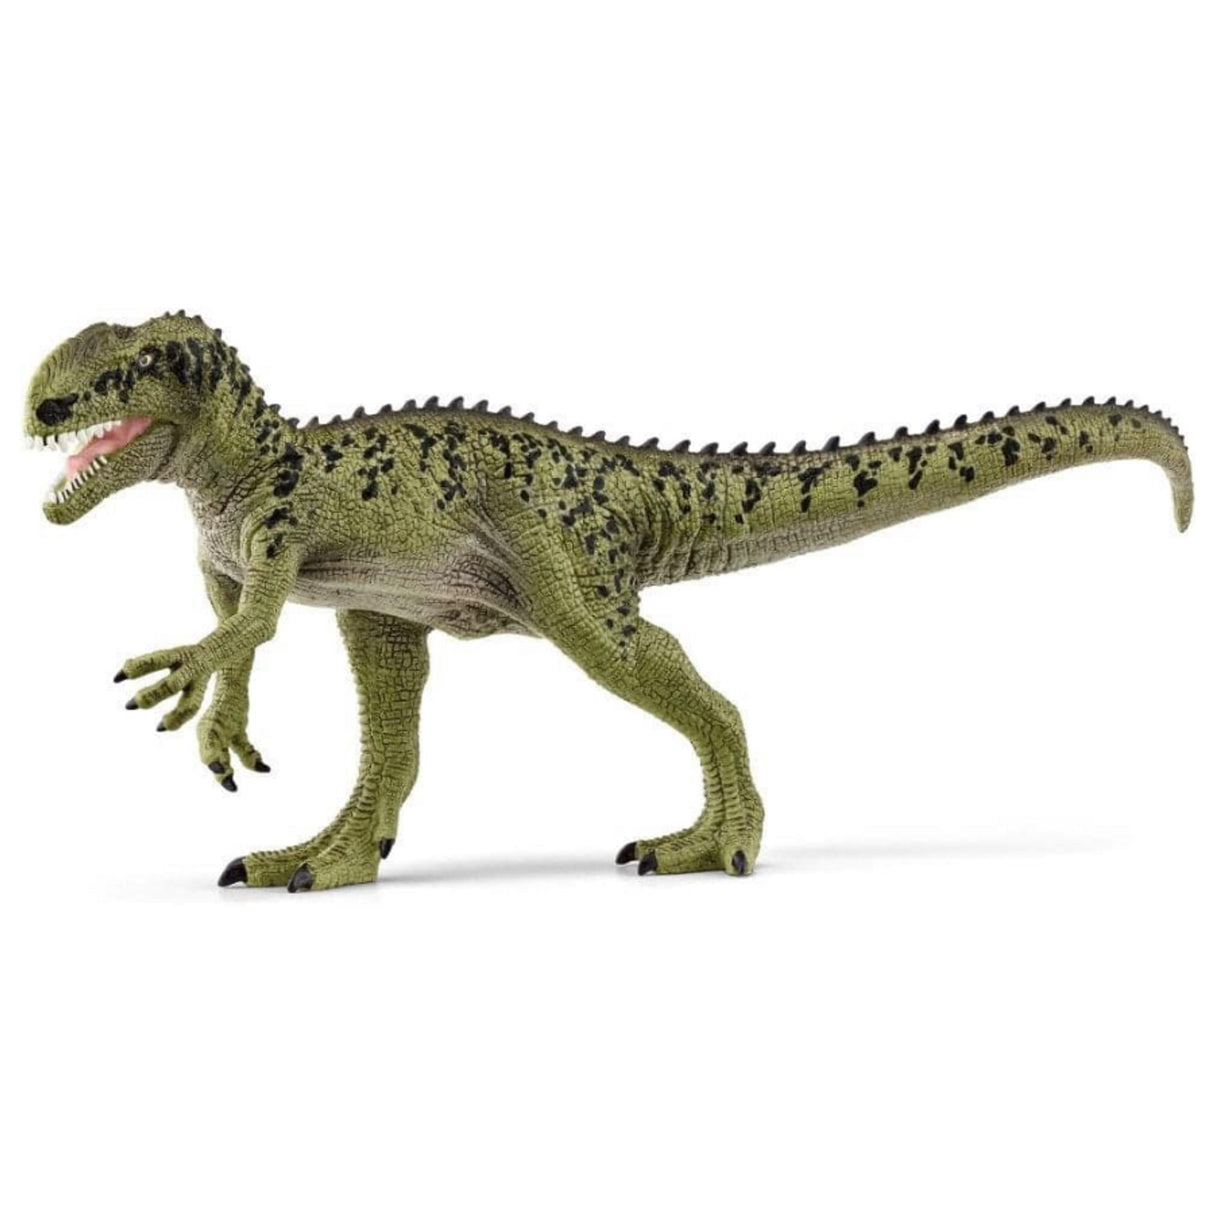 Schleich Monolophosaurus Dinosaur Toy